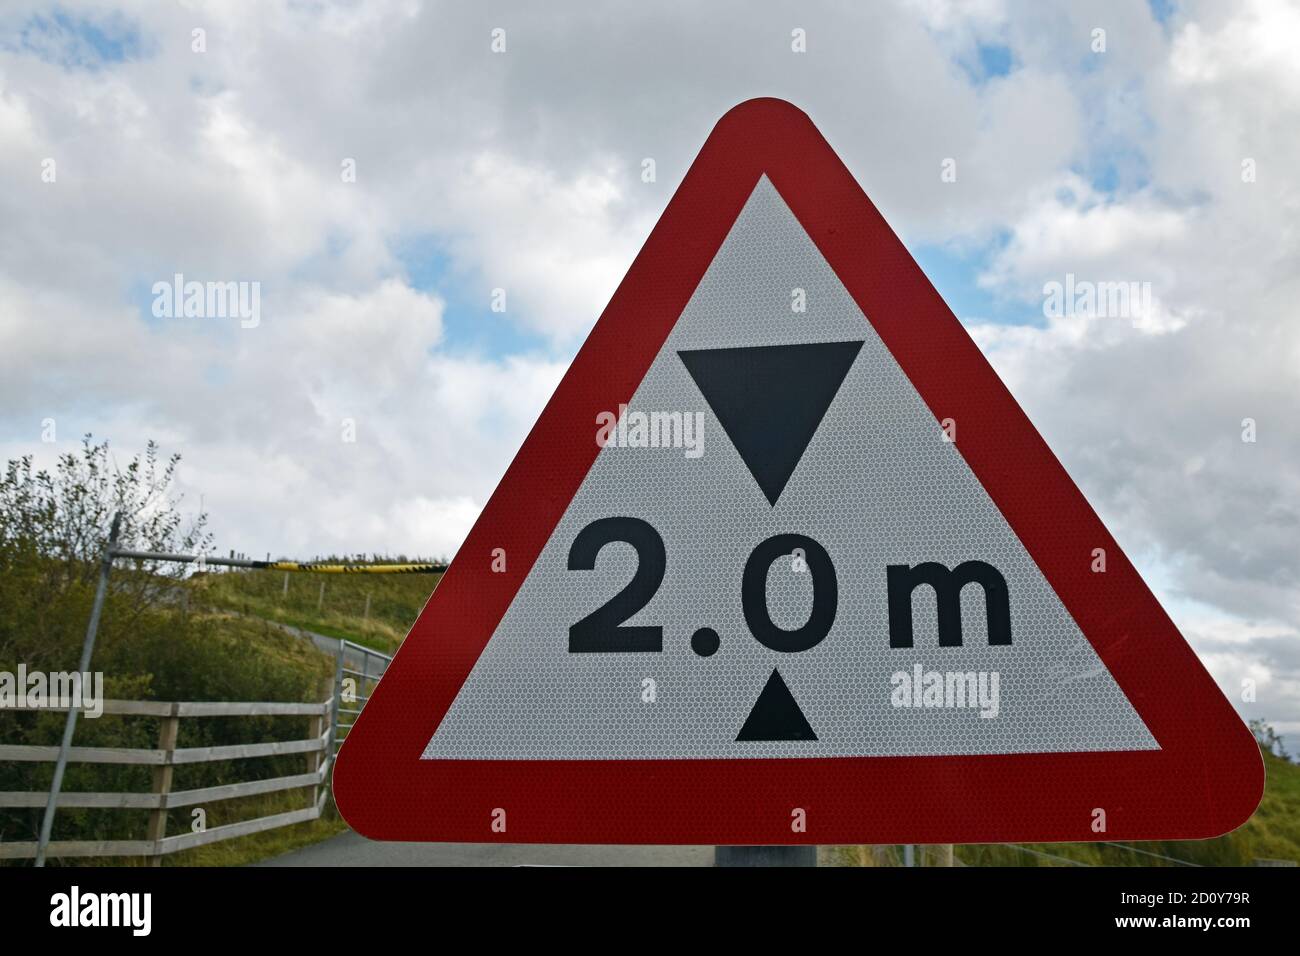 Señal de restricción de altura de dos metros en el triángulo rojo de advertencia con barrera borrosa en el fondo. Isla de Skye, Escocia, Reino Unido. Foto de stock